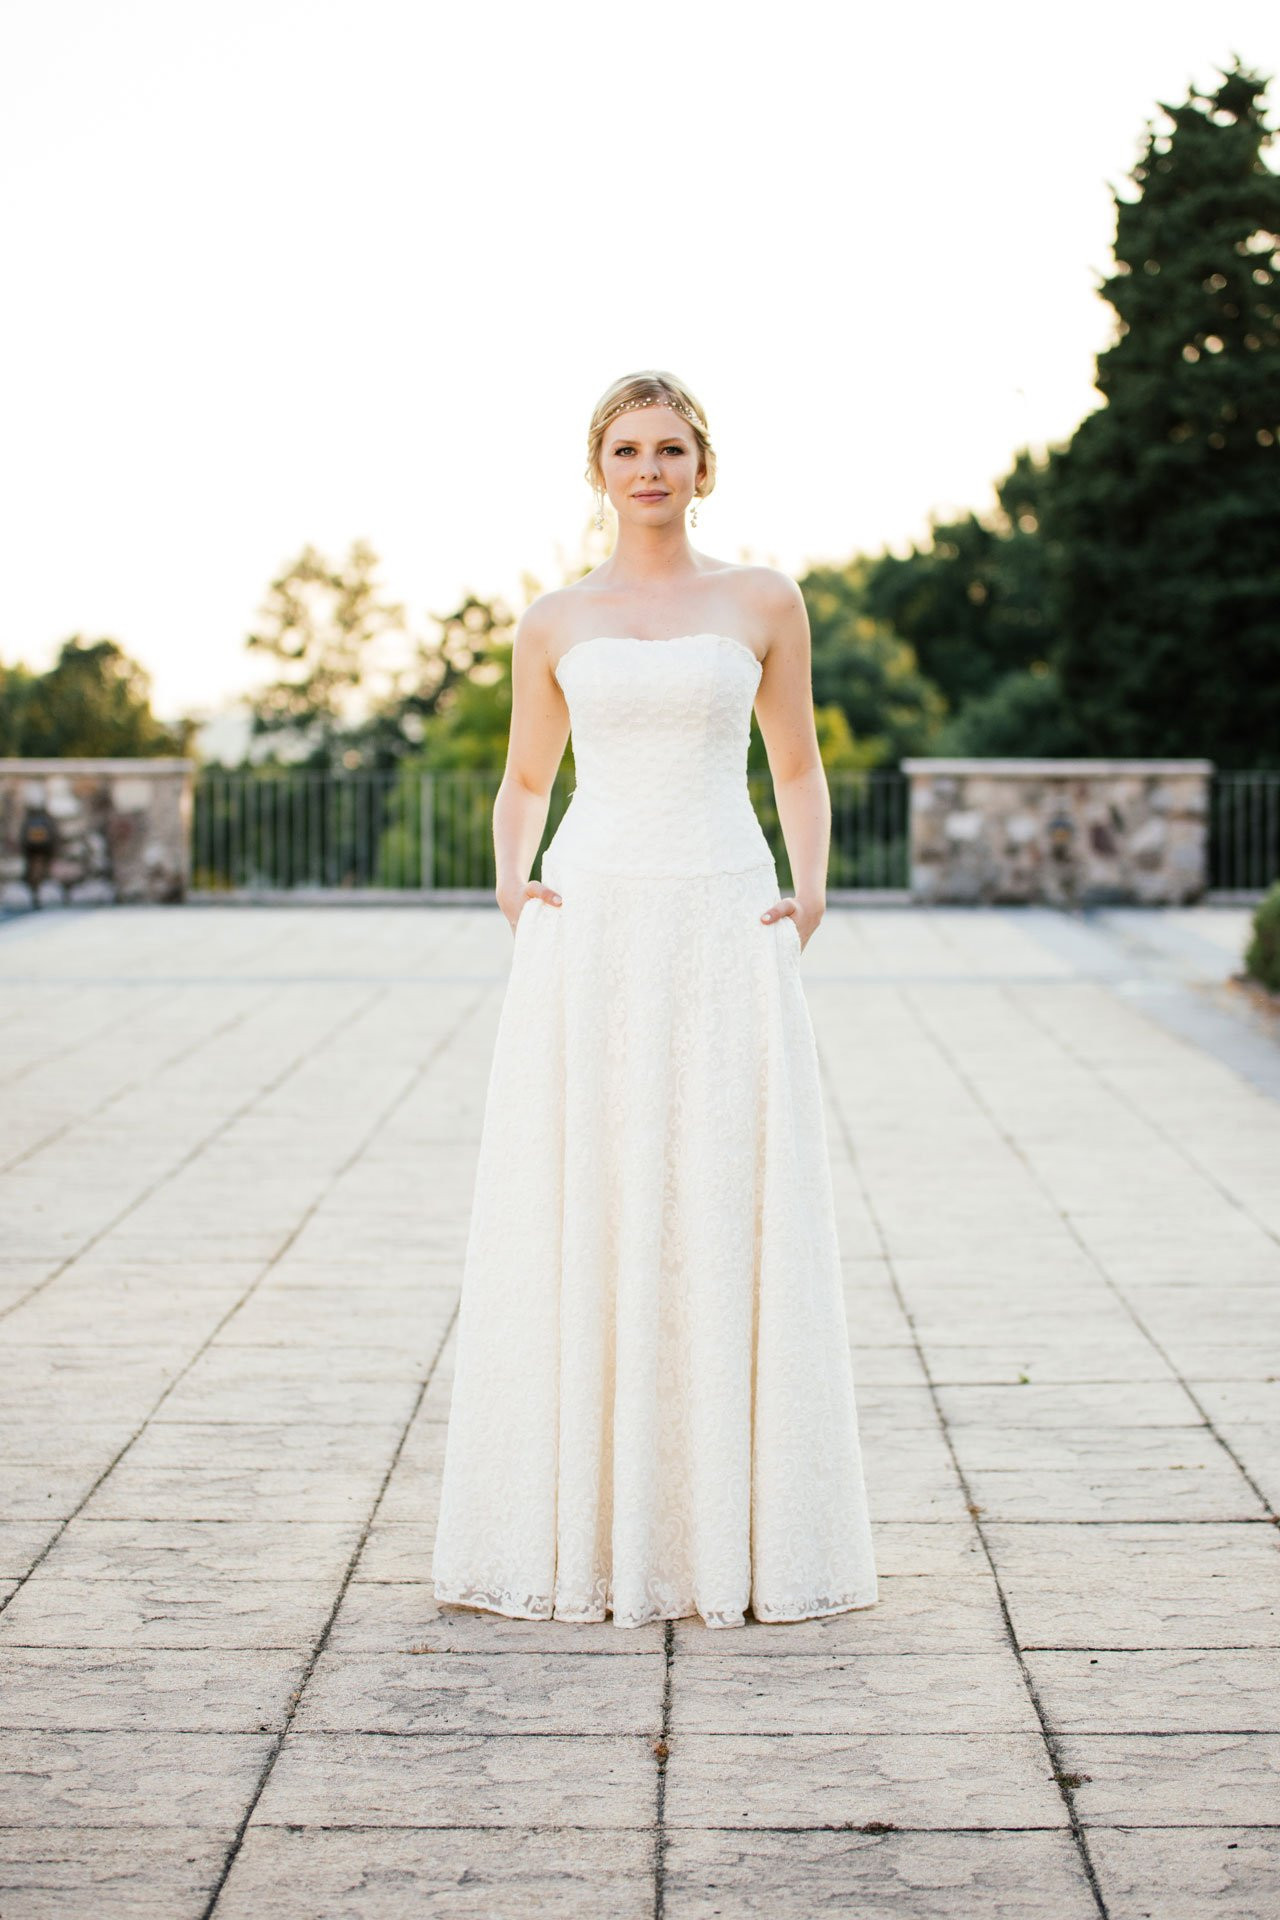 Hochzeitskleid A Linie
 Brautkleid A Linie mit Taschen – Traumkleid aus tollem